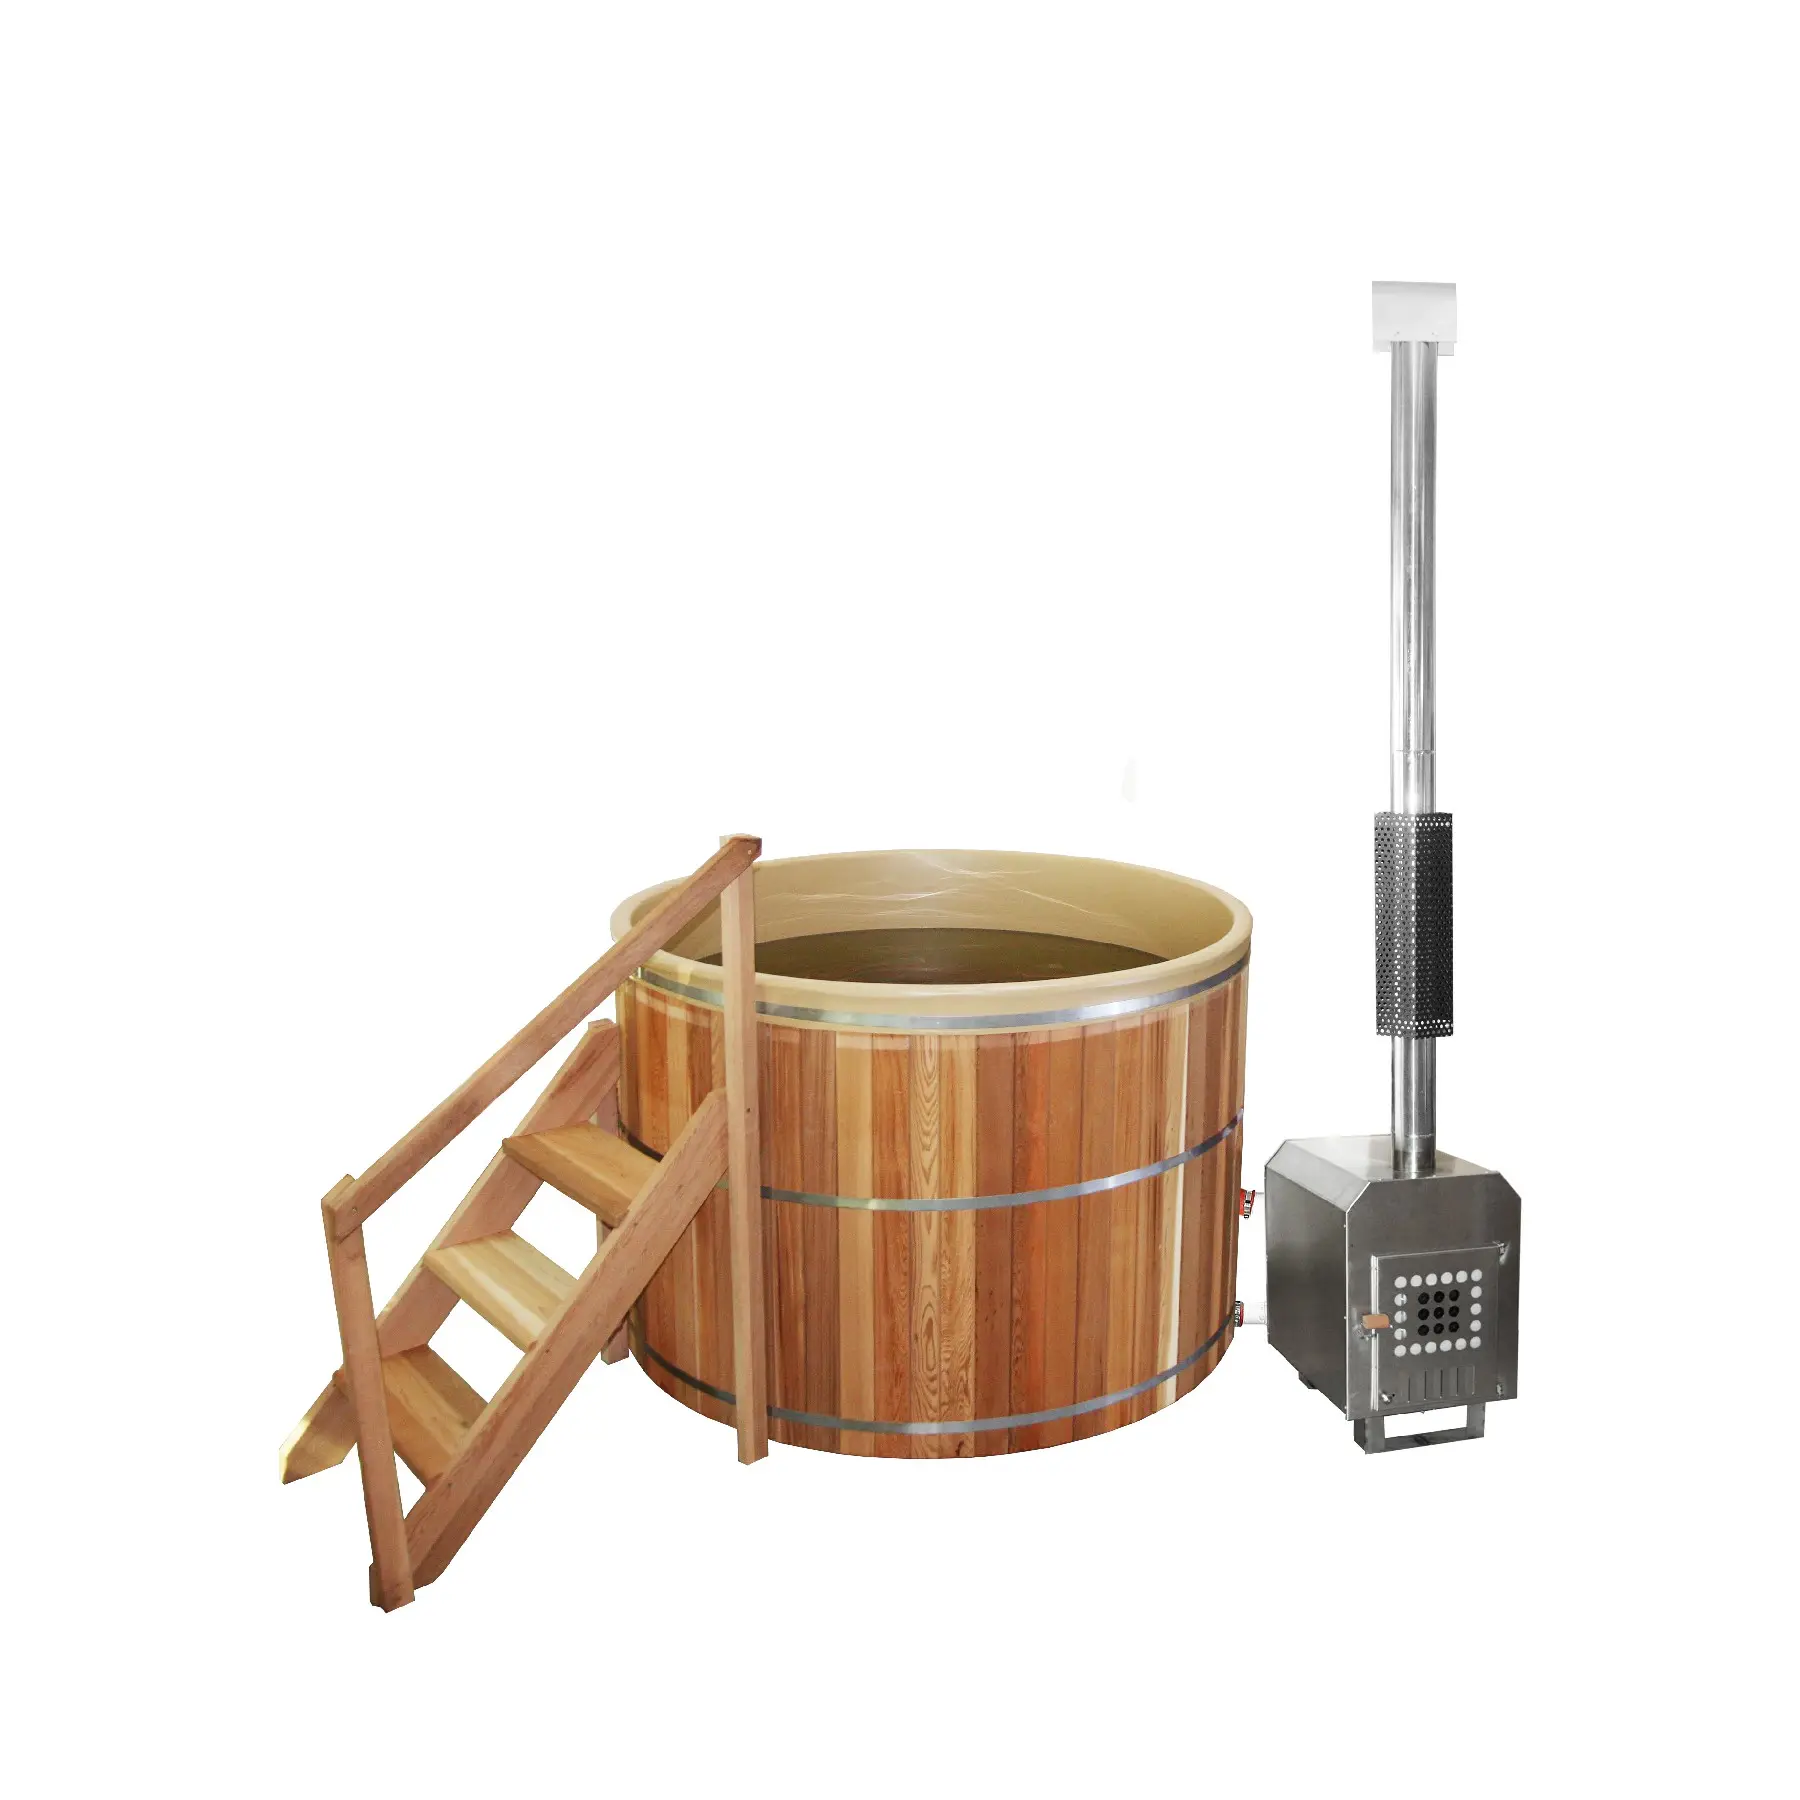 Fabbrica all'ingrosso vasca idromassaggio all'aperto vasca idromassaggio per la vendita a buon mercato prezzo cotto a legna stufa a tubo caldo